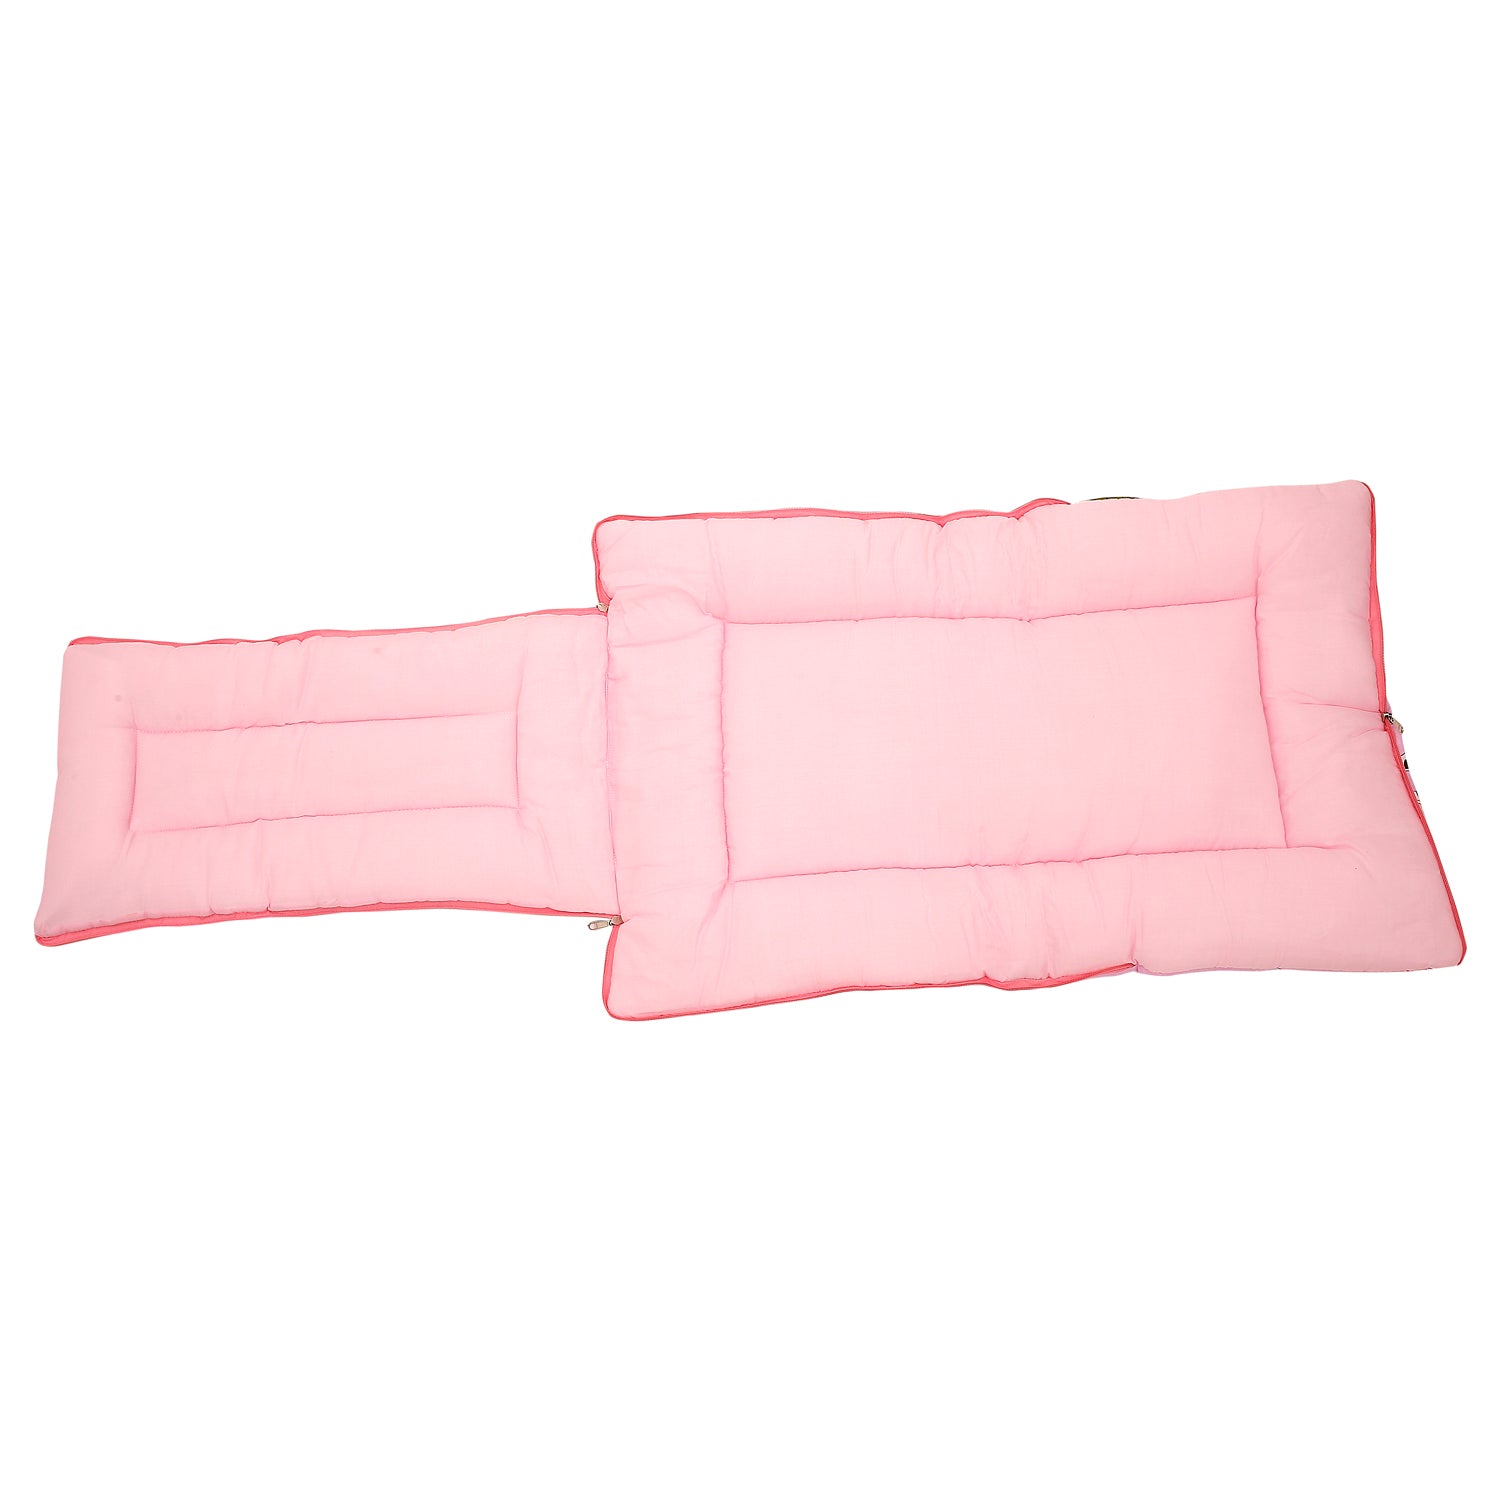 Sleeping Bag Savanna Ooh Na Na Pink - Baby Moo